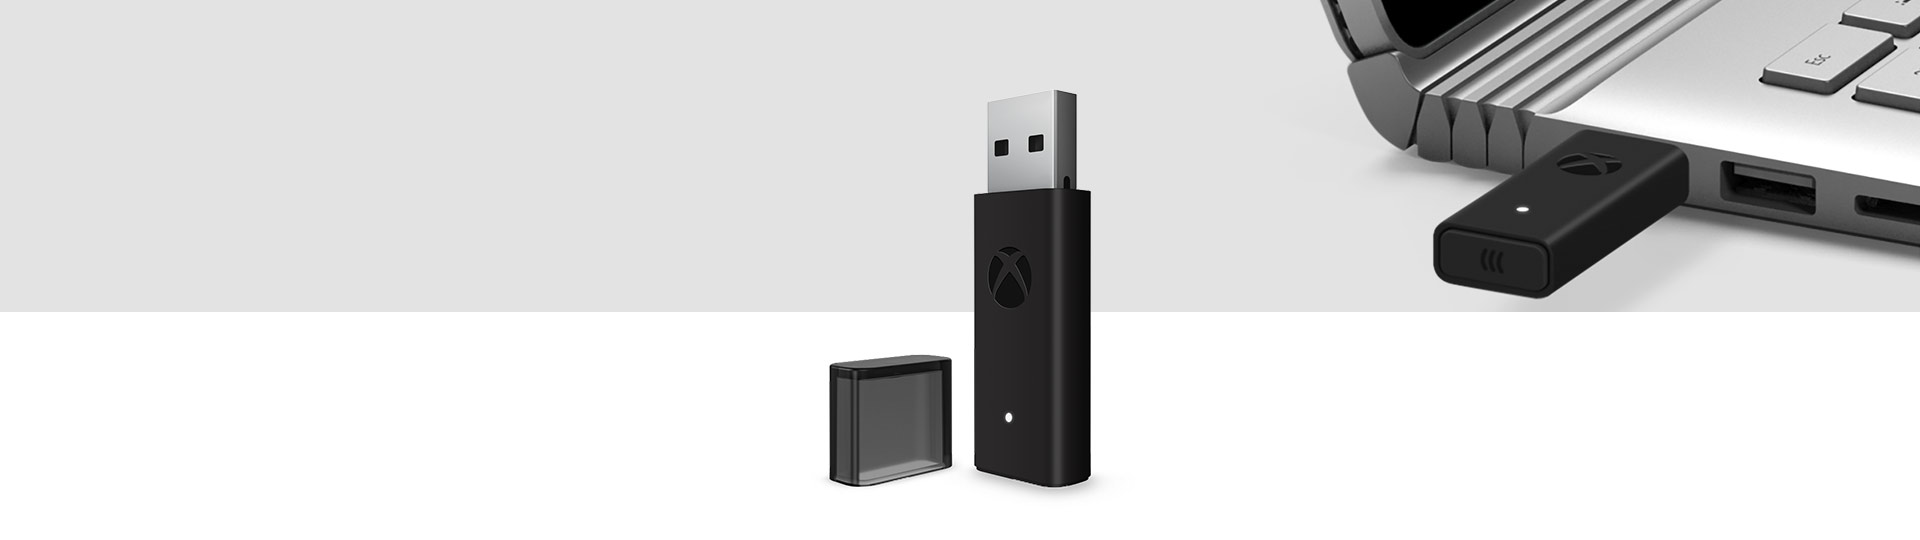 Adaptateur manette sans fil Xbox pour Windows 10 avec adaptateur sans fil Xbox branché sur un port USB dʼun ordinateur portable en arrière-plan